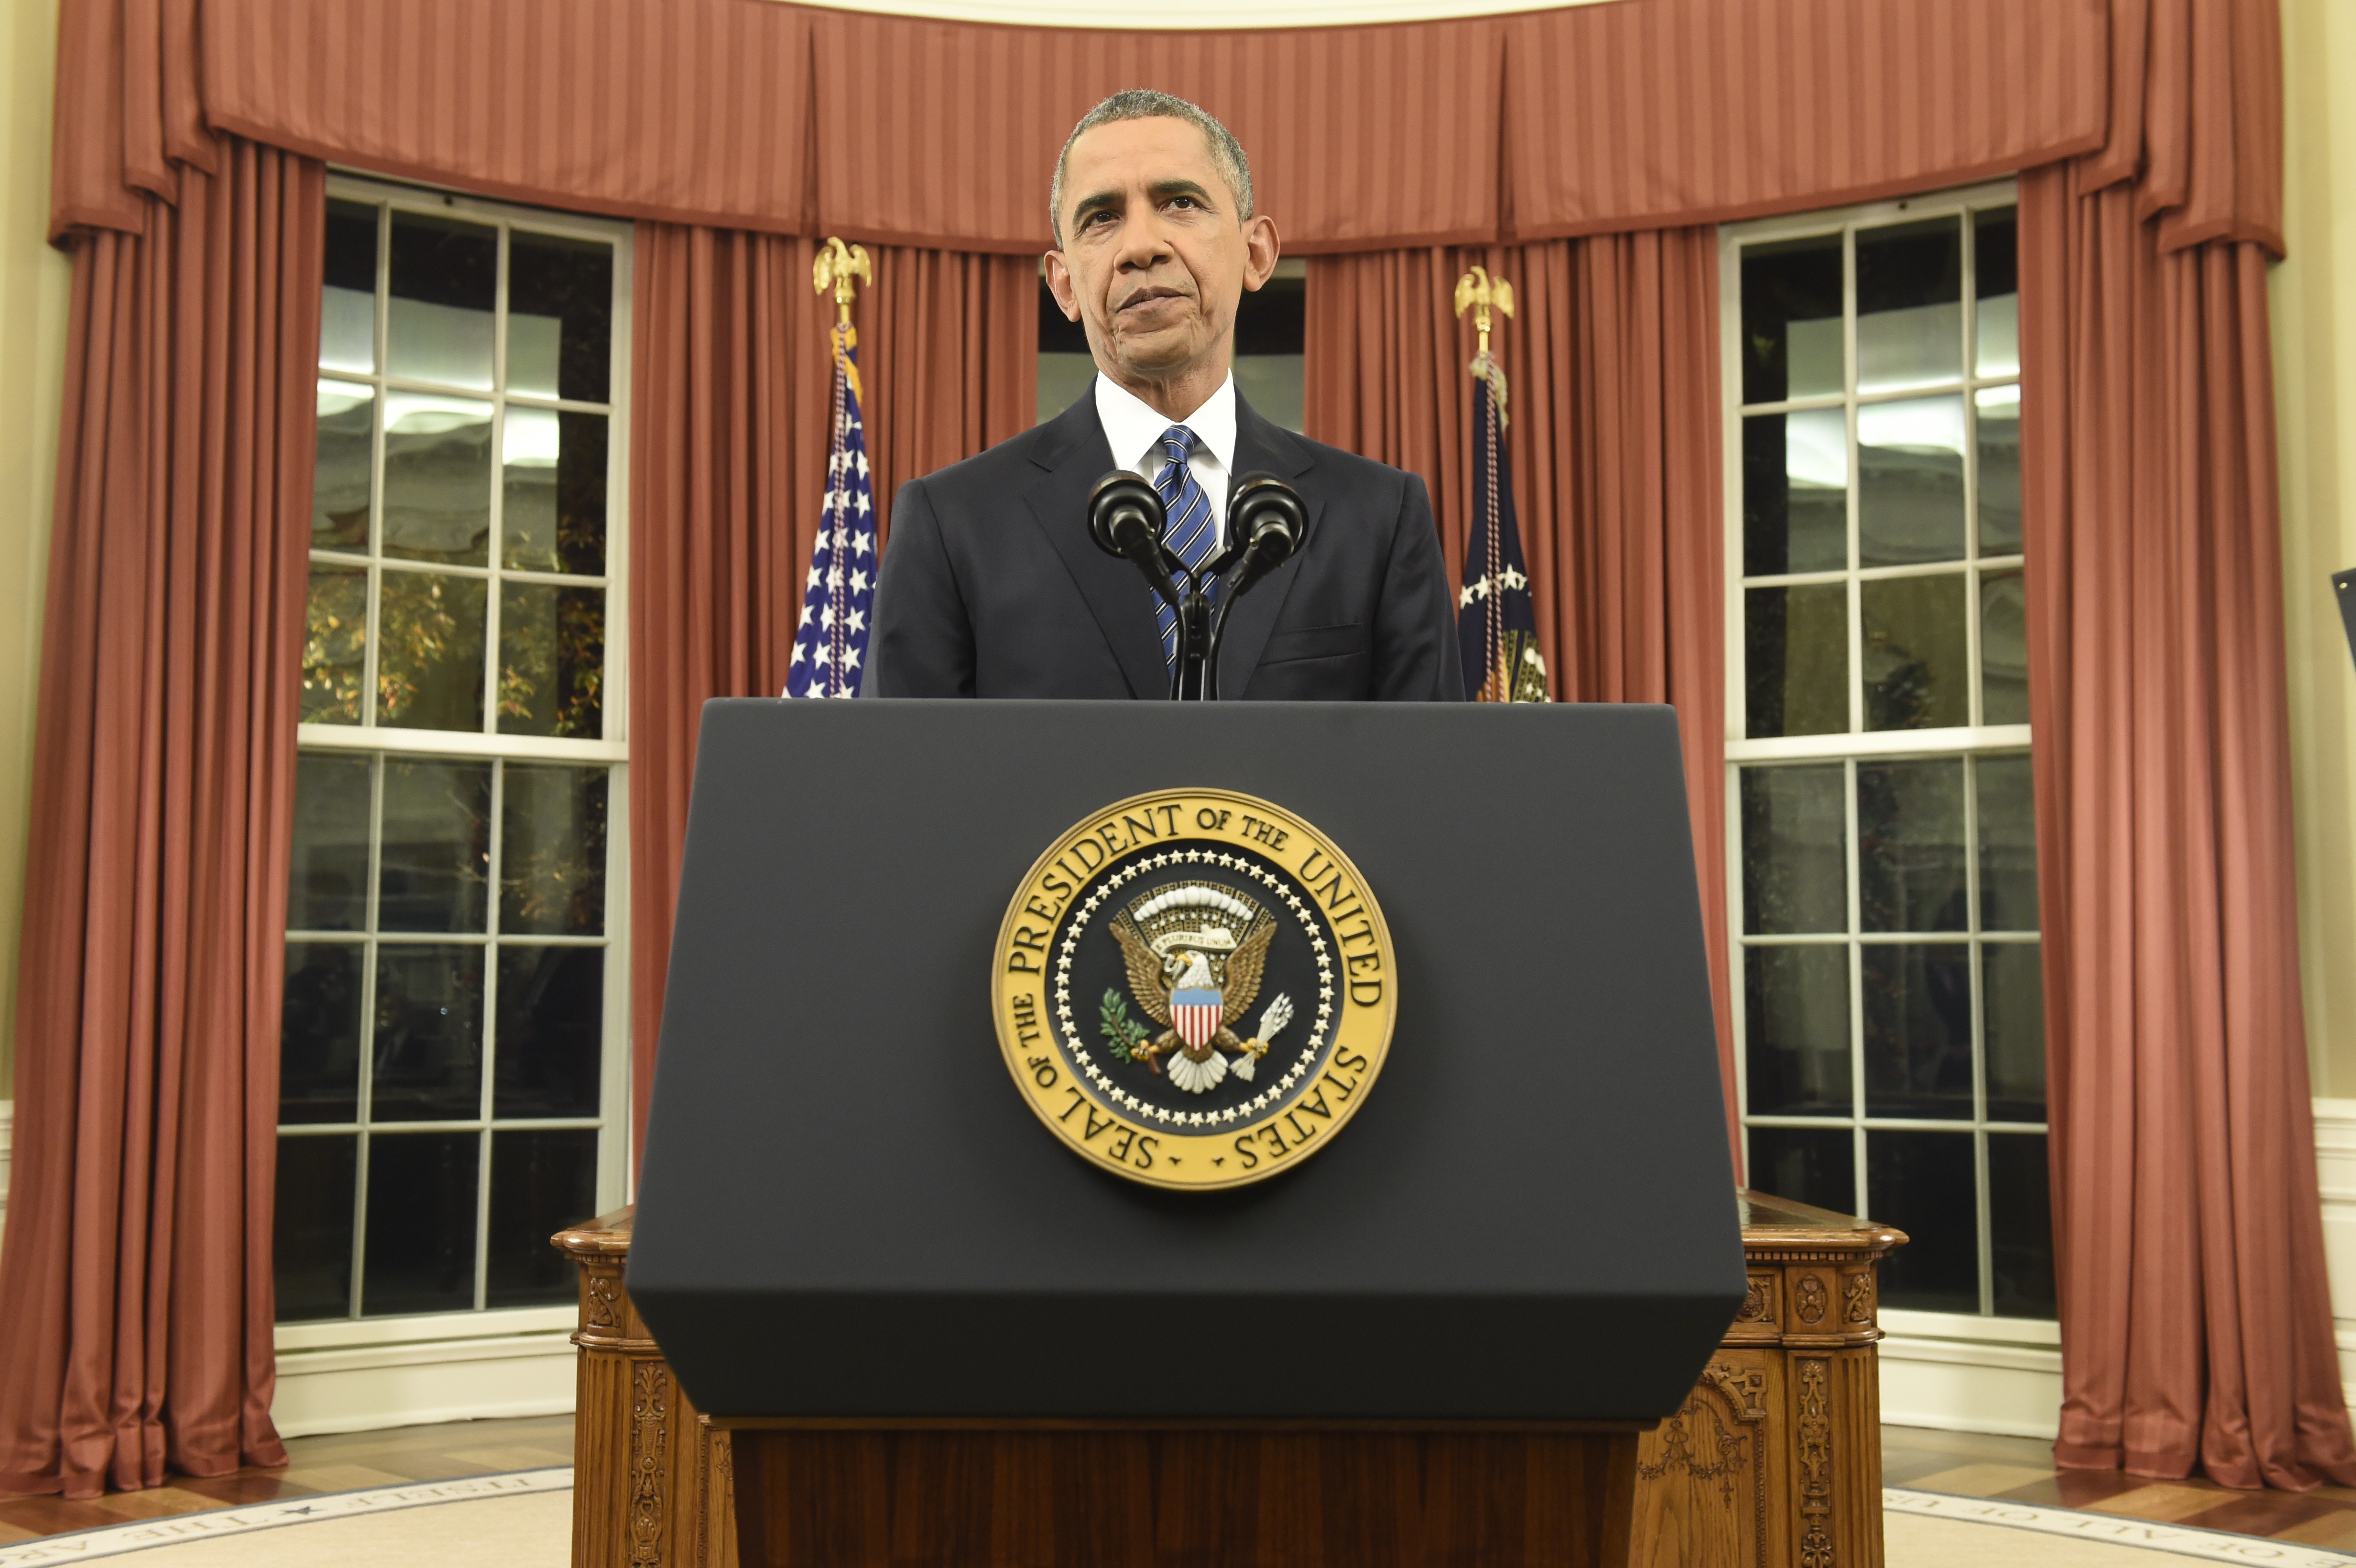 President Obama speech full text transcript